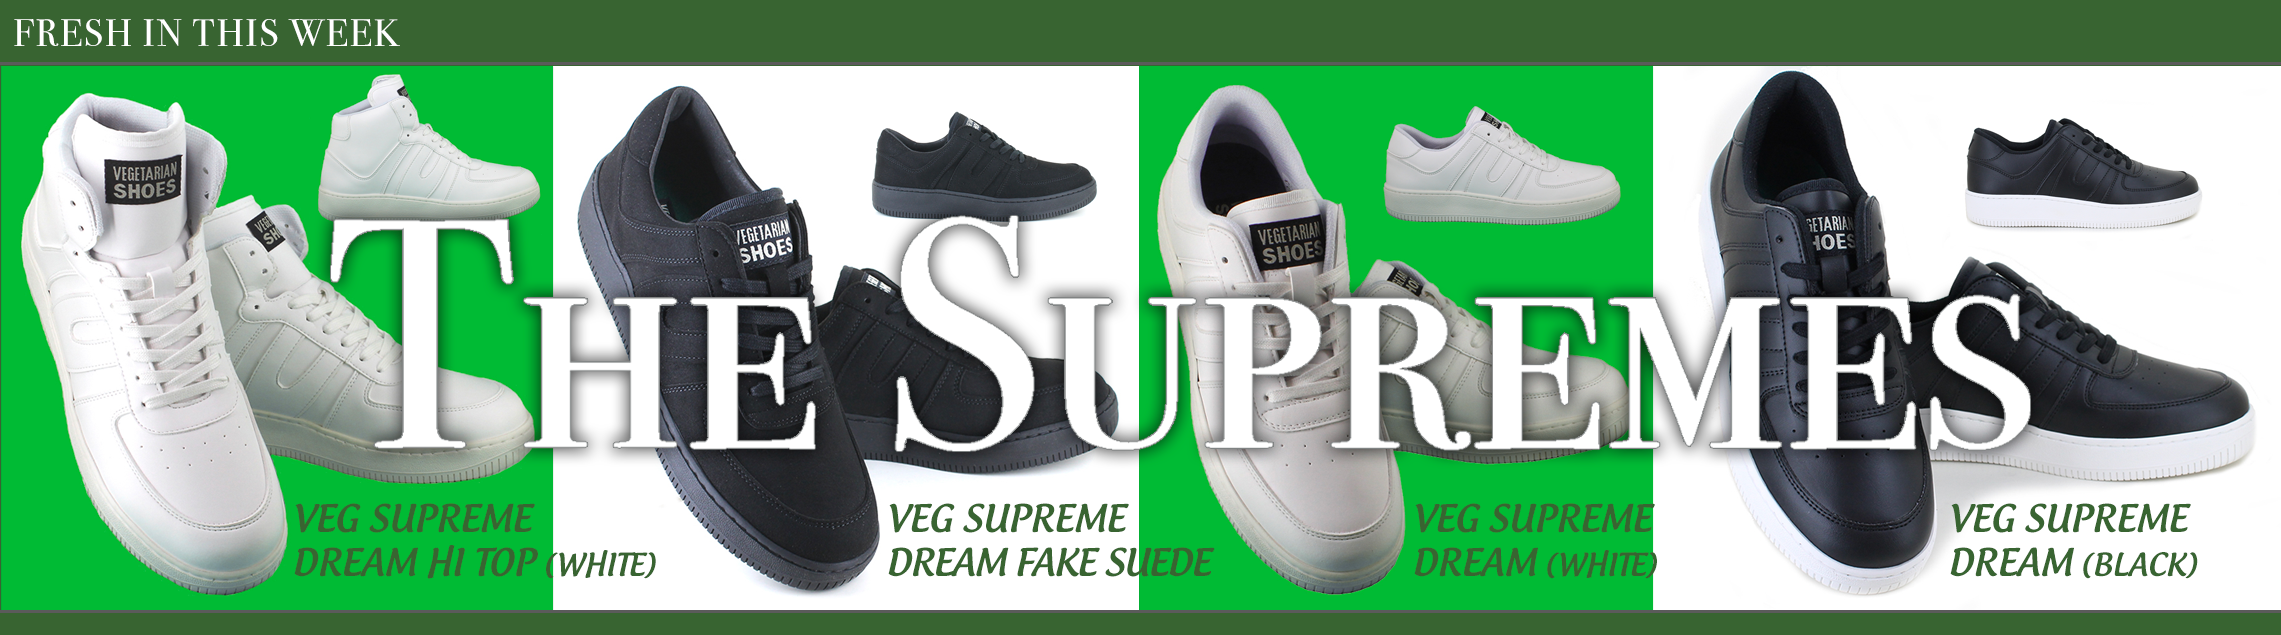 New Supreme Dream Sneakers